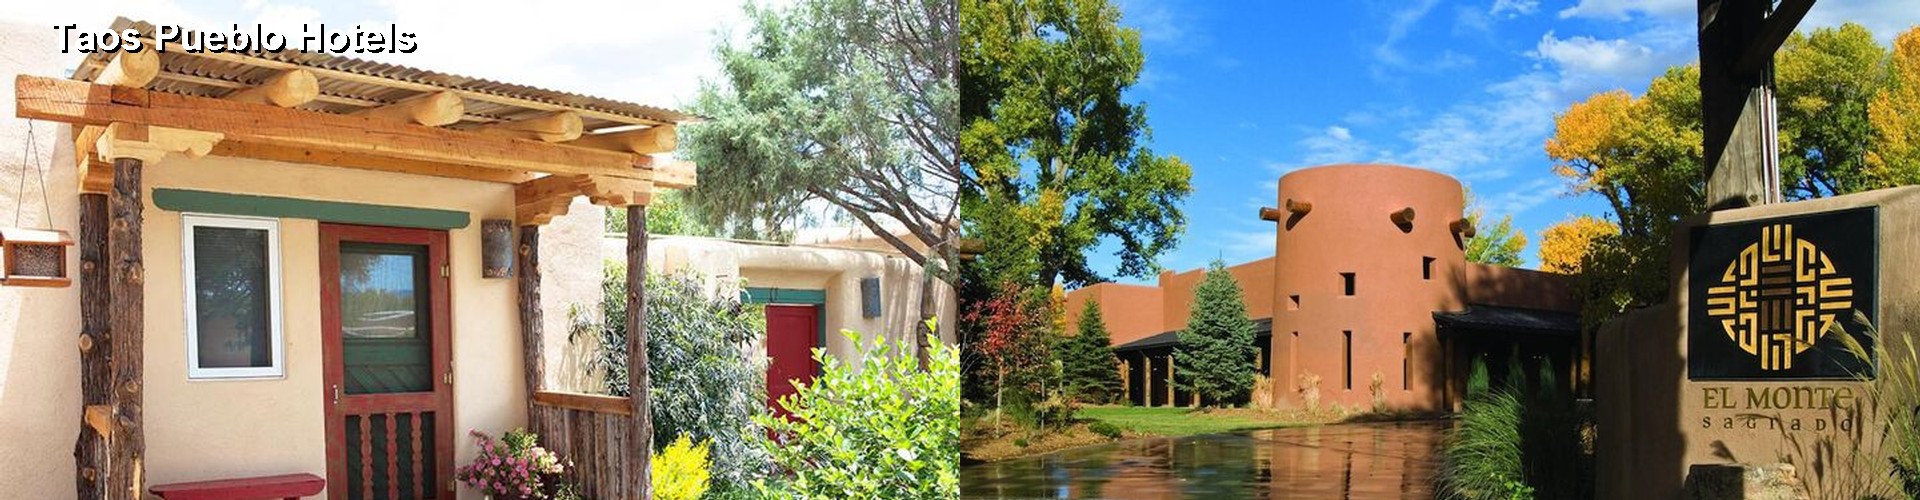 5 Best Hotels near Taos Pueblo